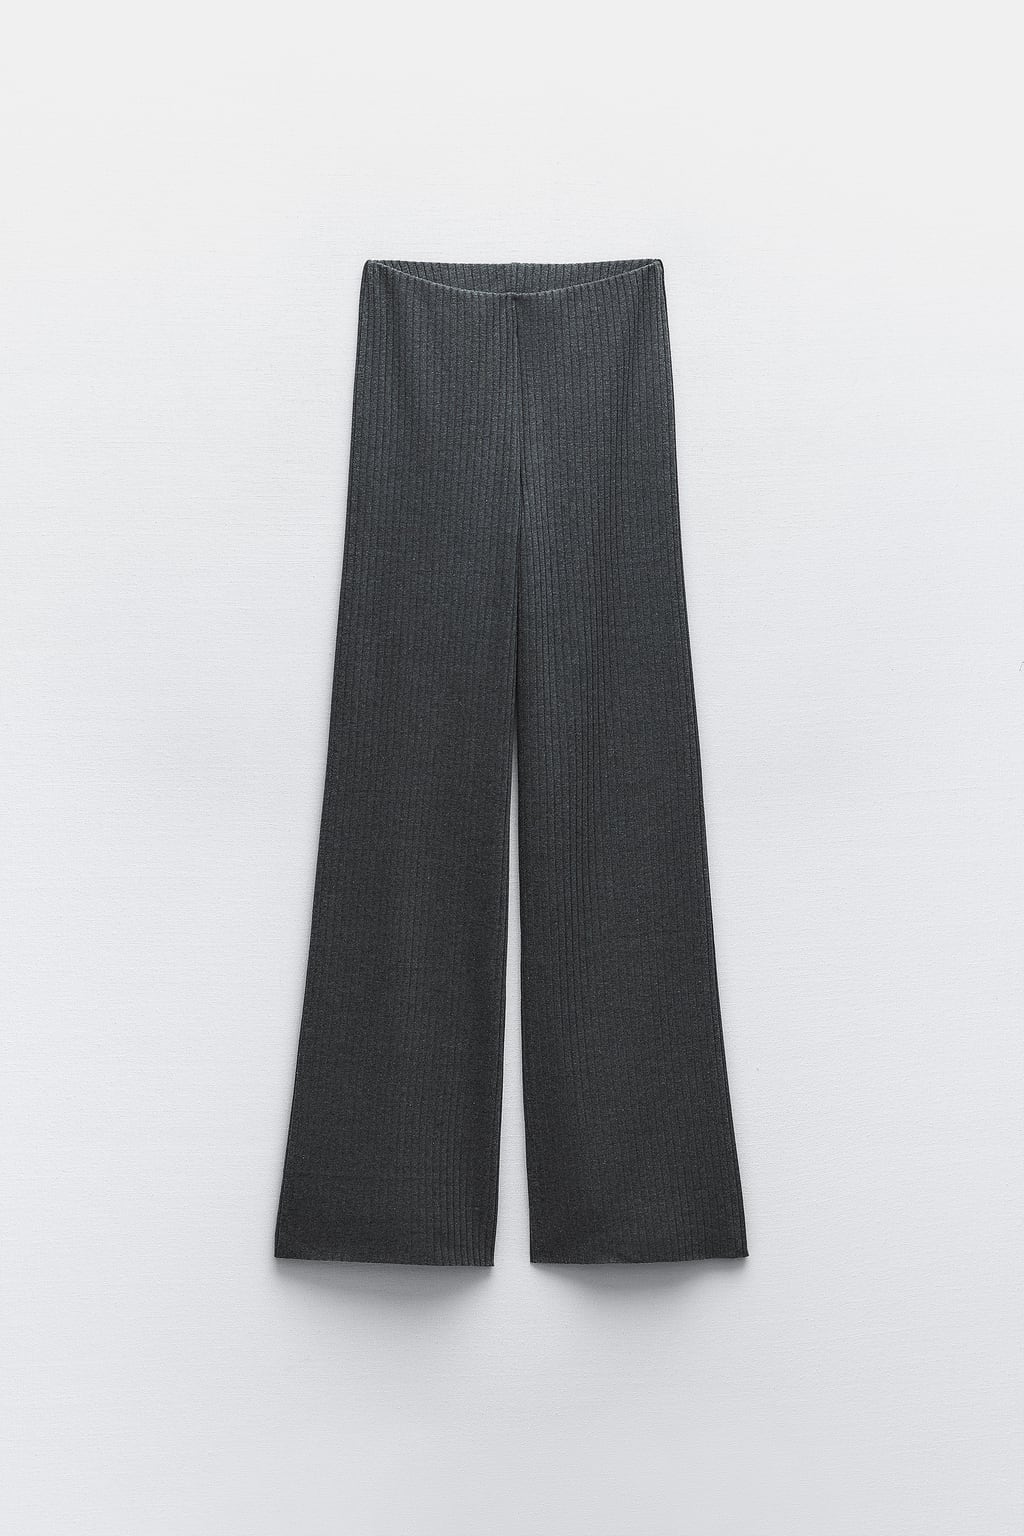 Широкие брюки в рубчик ZARA, серый мергель брюки карандаш женские повседневные до щиколотки однотонные хлопковые штаны с эластичным поясом черные брюки с широкими штанинами в стил